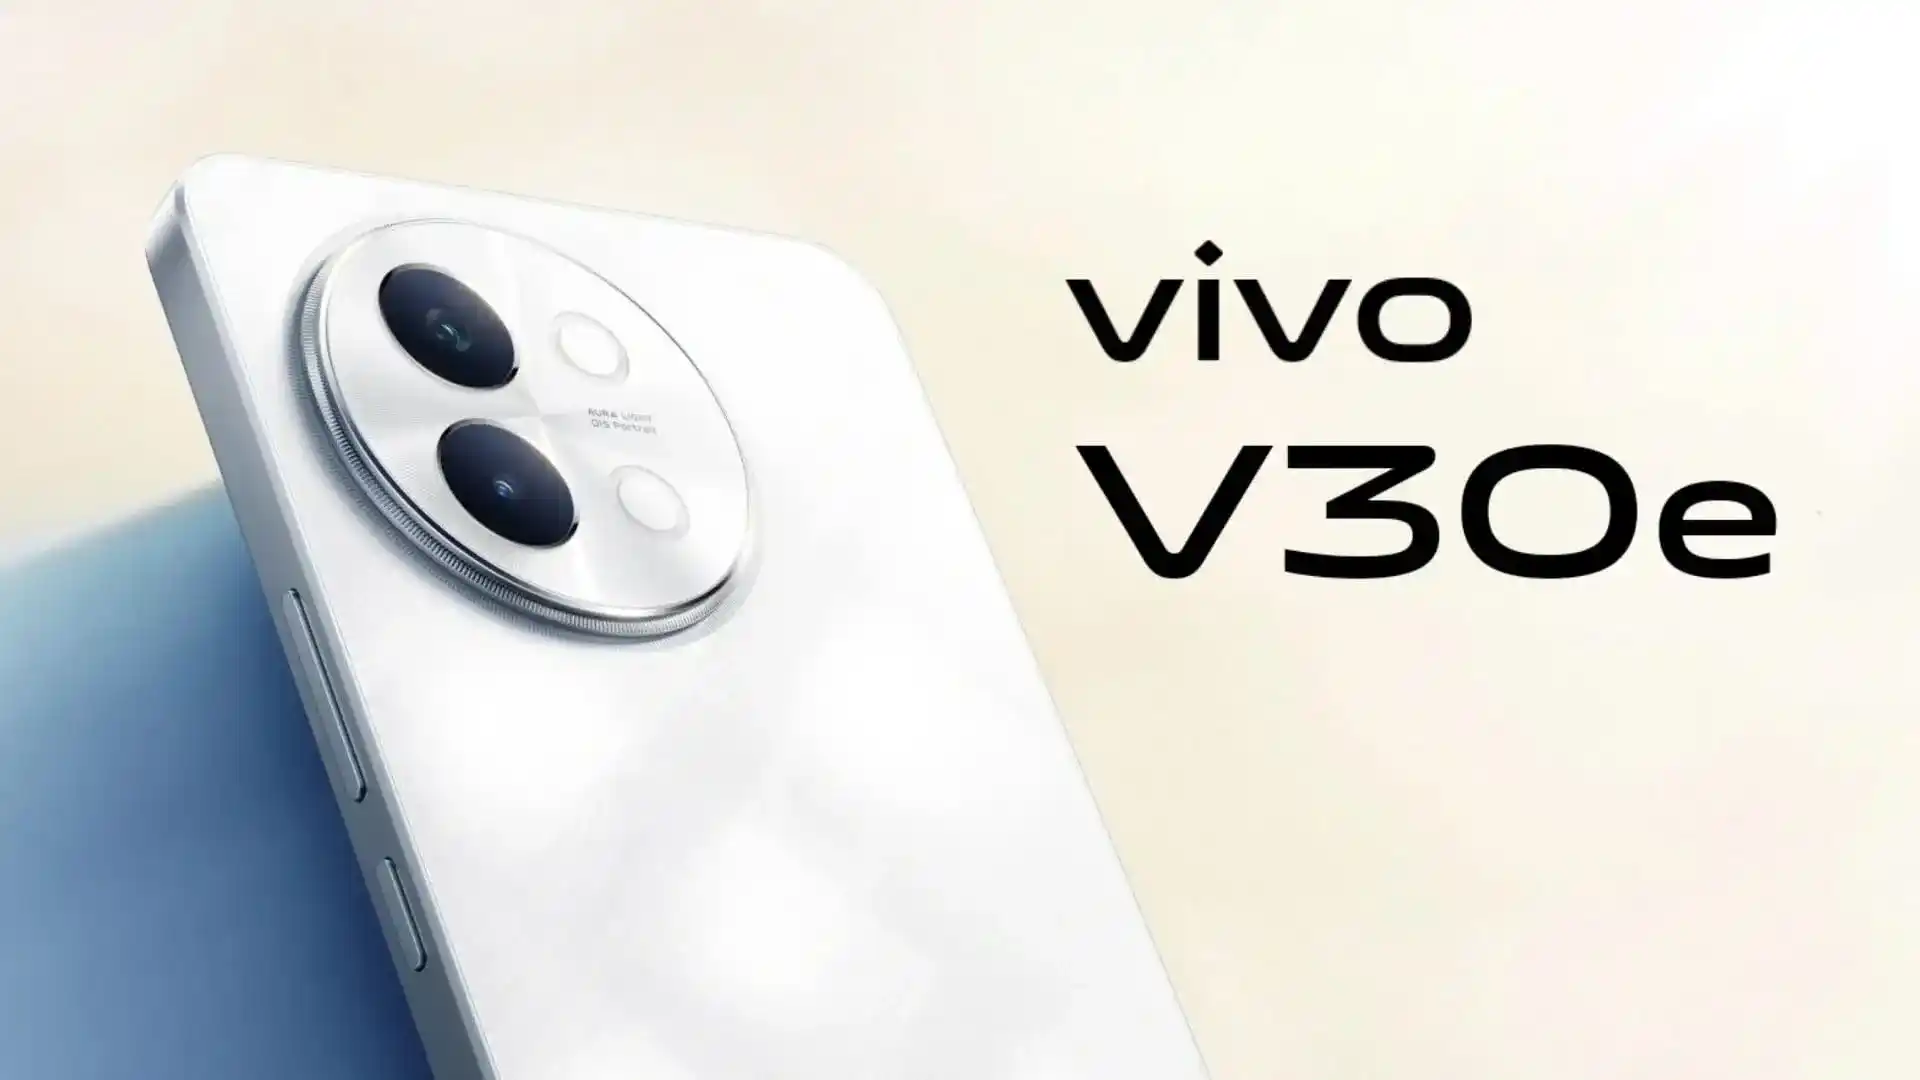 En innsider har avslørt utseendet og spesifikasjonene til den nye Vivo V30e-smarttelefonen.